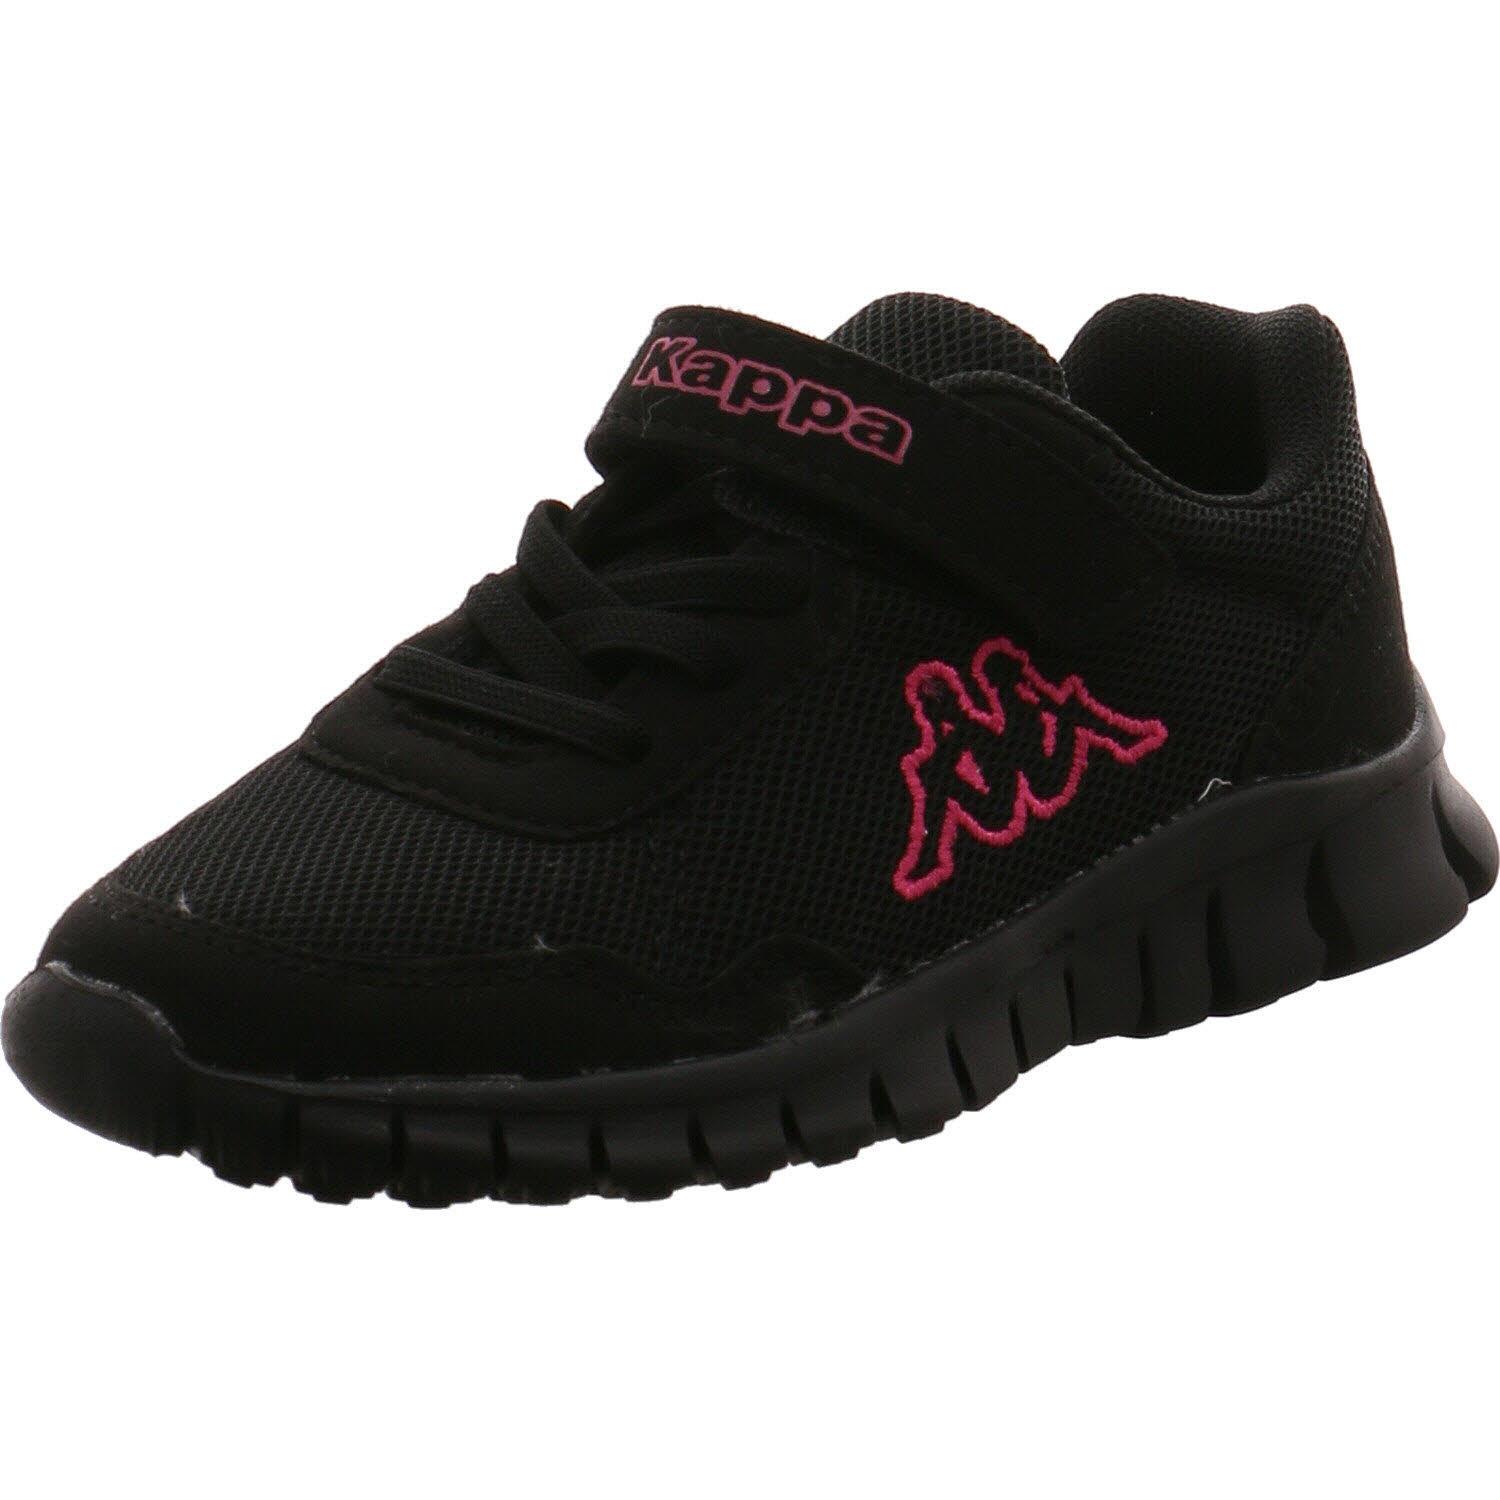 Kappa Sneaker low Stylecode: für 260982 in K BC blau/pink P&P VALDIS BCK Shoes Mädchen 